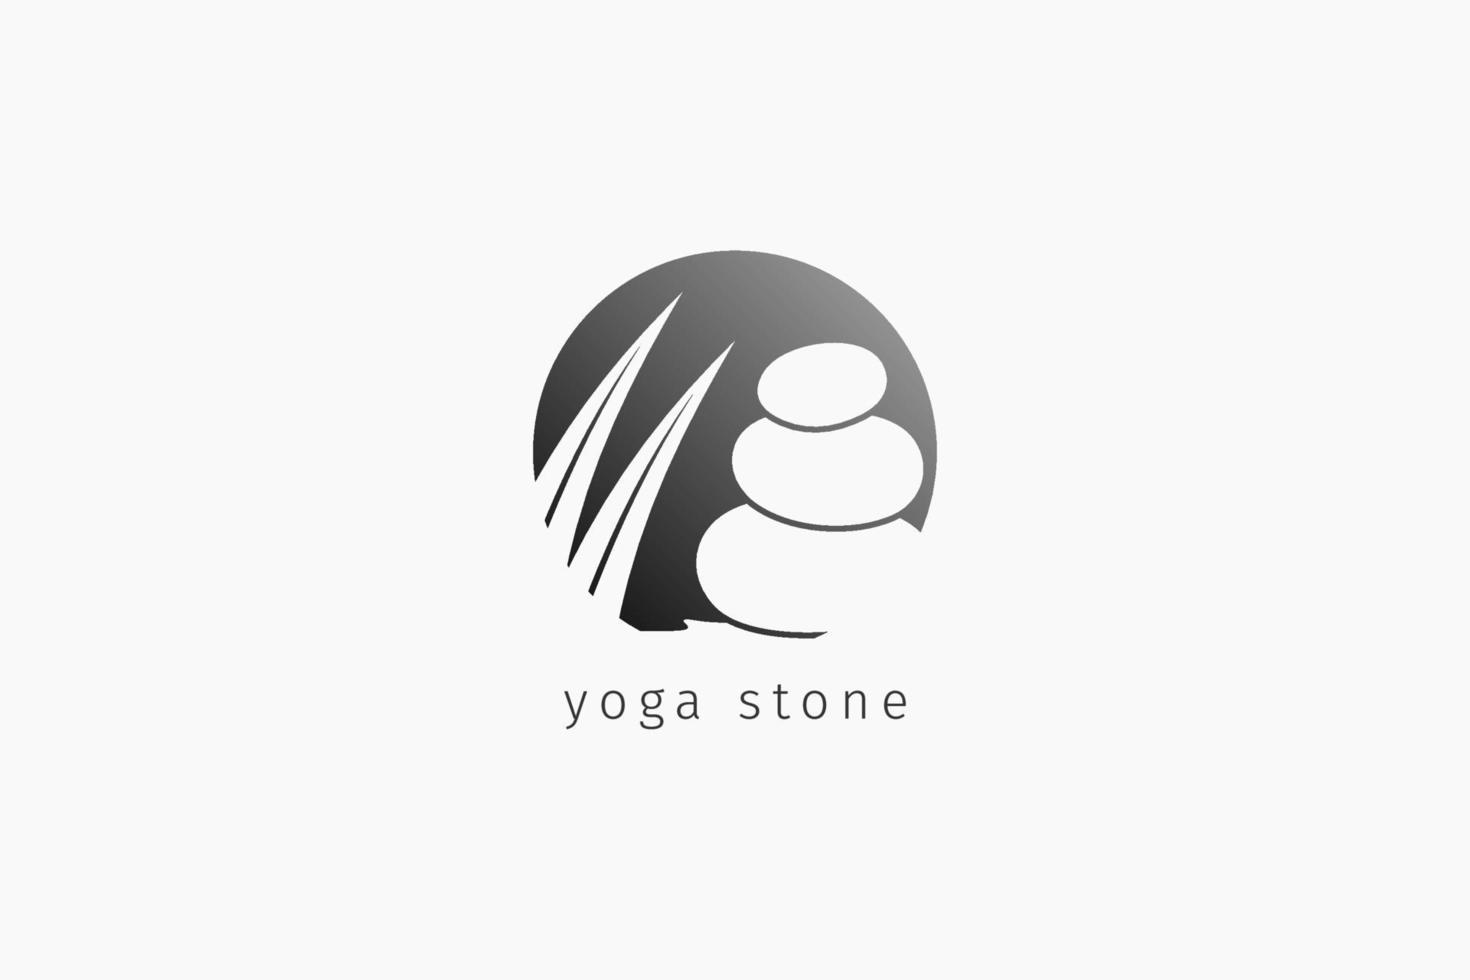 Isoliertes Yoga-Stein-Logo mit zweilagigen Palmblättern im negativen Kreis-Logo, um einen positiven, ausgleichenden Geist zu fördern. geeignet für Meditationsunterricht, Massage, Spa, Resort vektor